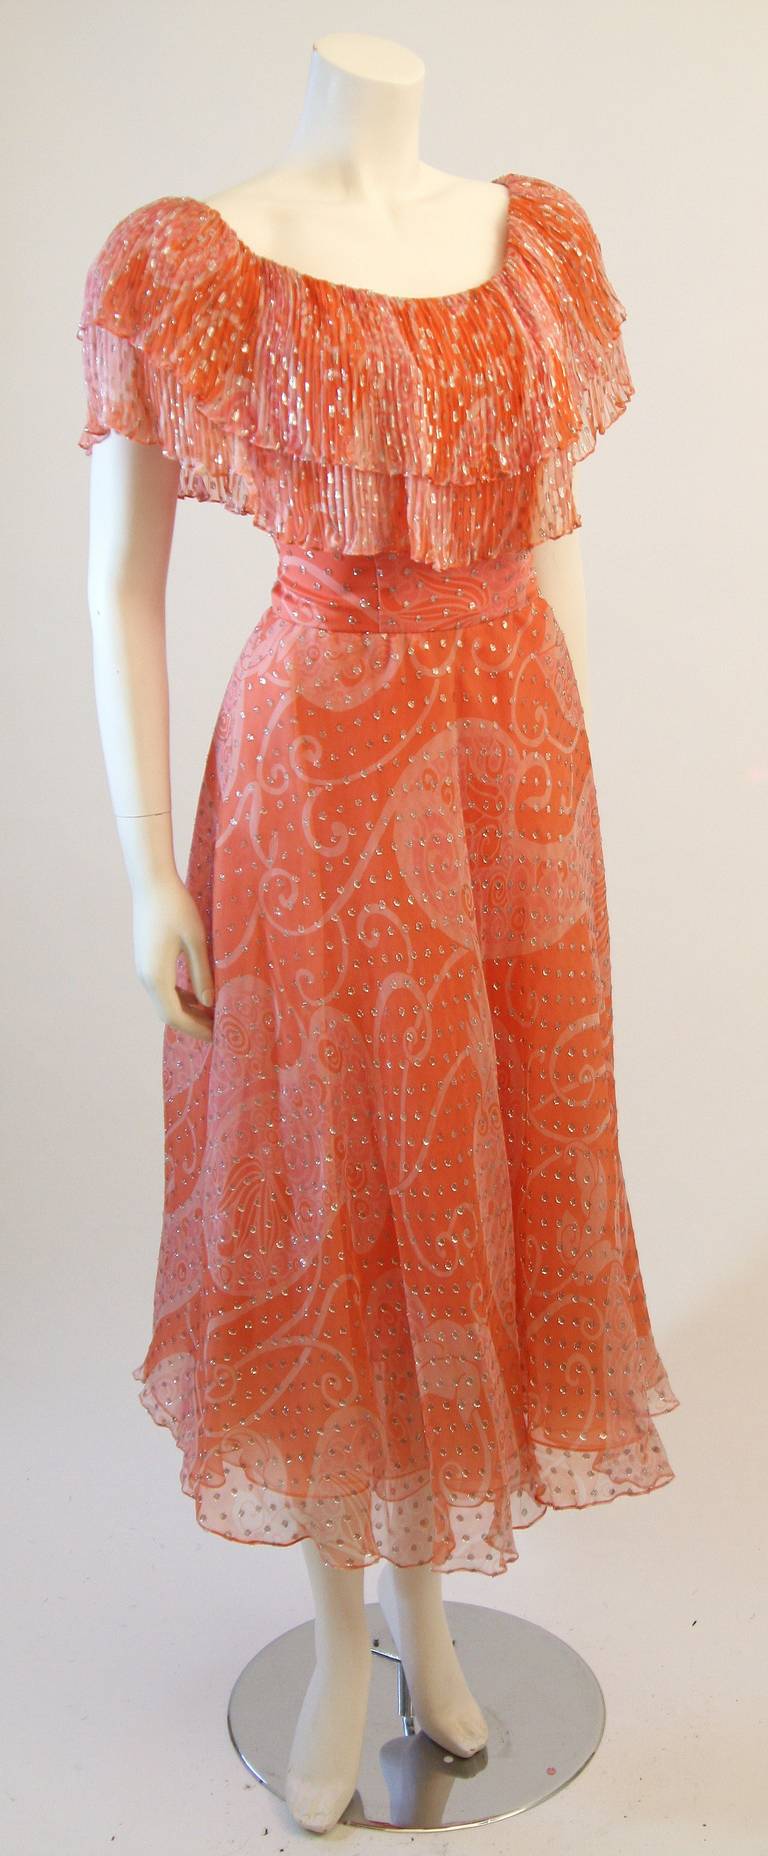 Dies ist eine wunderbare Diane Dickerson. Dieses Kleid besteht aus einem wunderschönen korallenroten Seidenchiffon mit einer Mischung aus orangen und cremefarbenen Tönen. Das schulterfreie Modell ist mit einer plissierten Rüsche akzentuiert und wird